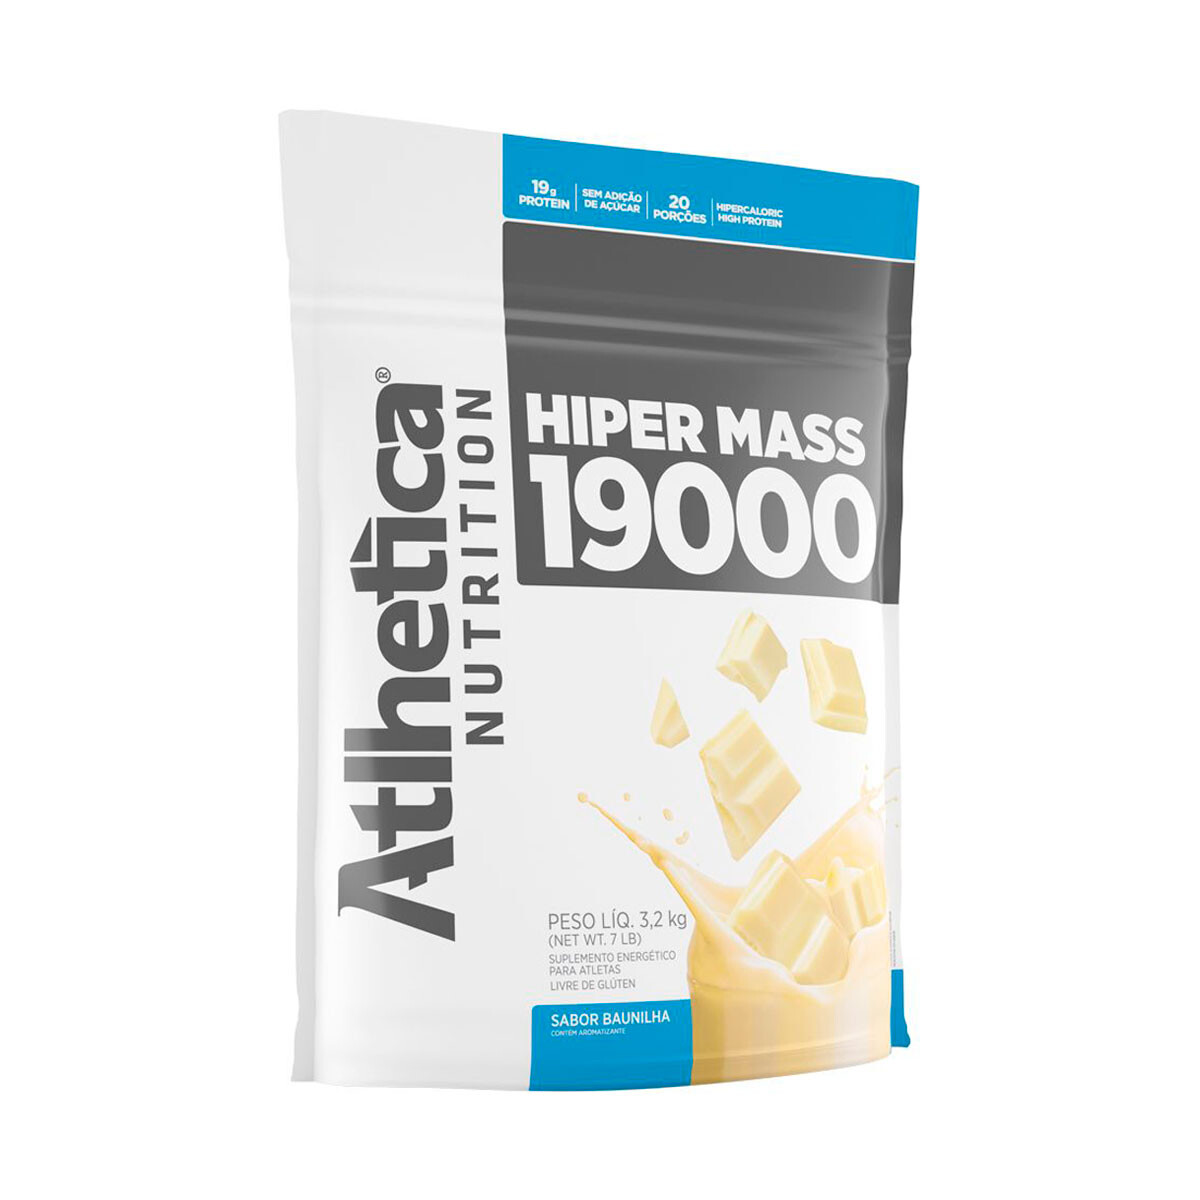 Atlhetica Hiper Mass 19000 3.2kg - Vainilla 